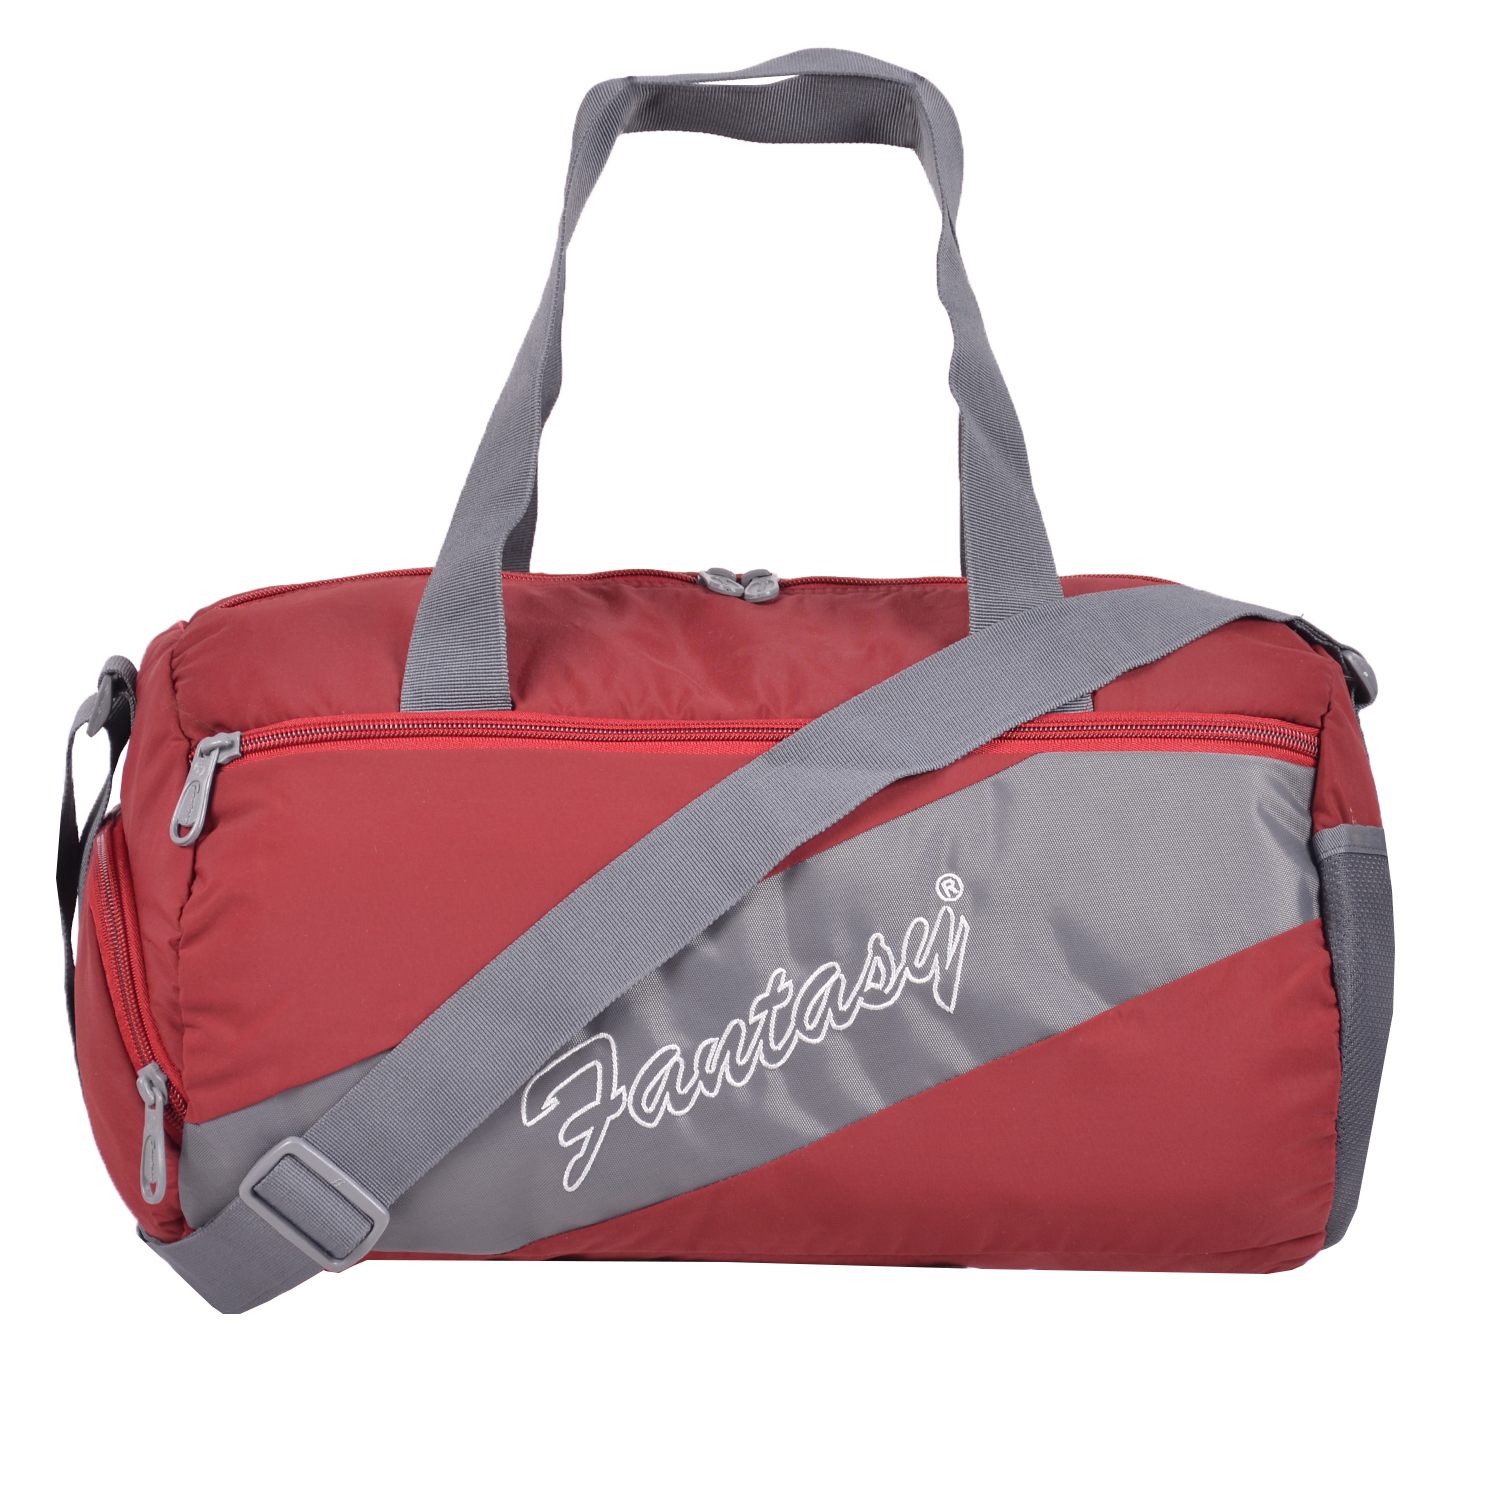 Buy Duffle Bags Online, Leather Duffle Bags Online - Roshan Bags